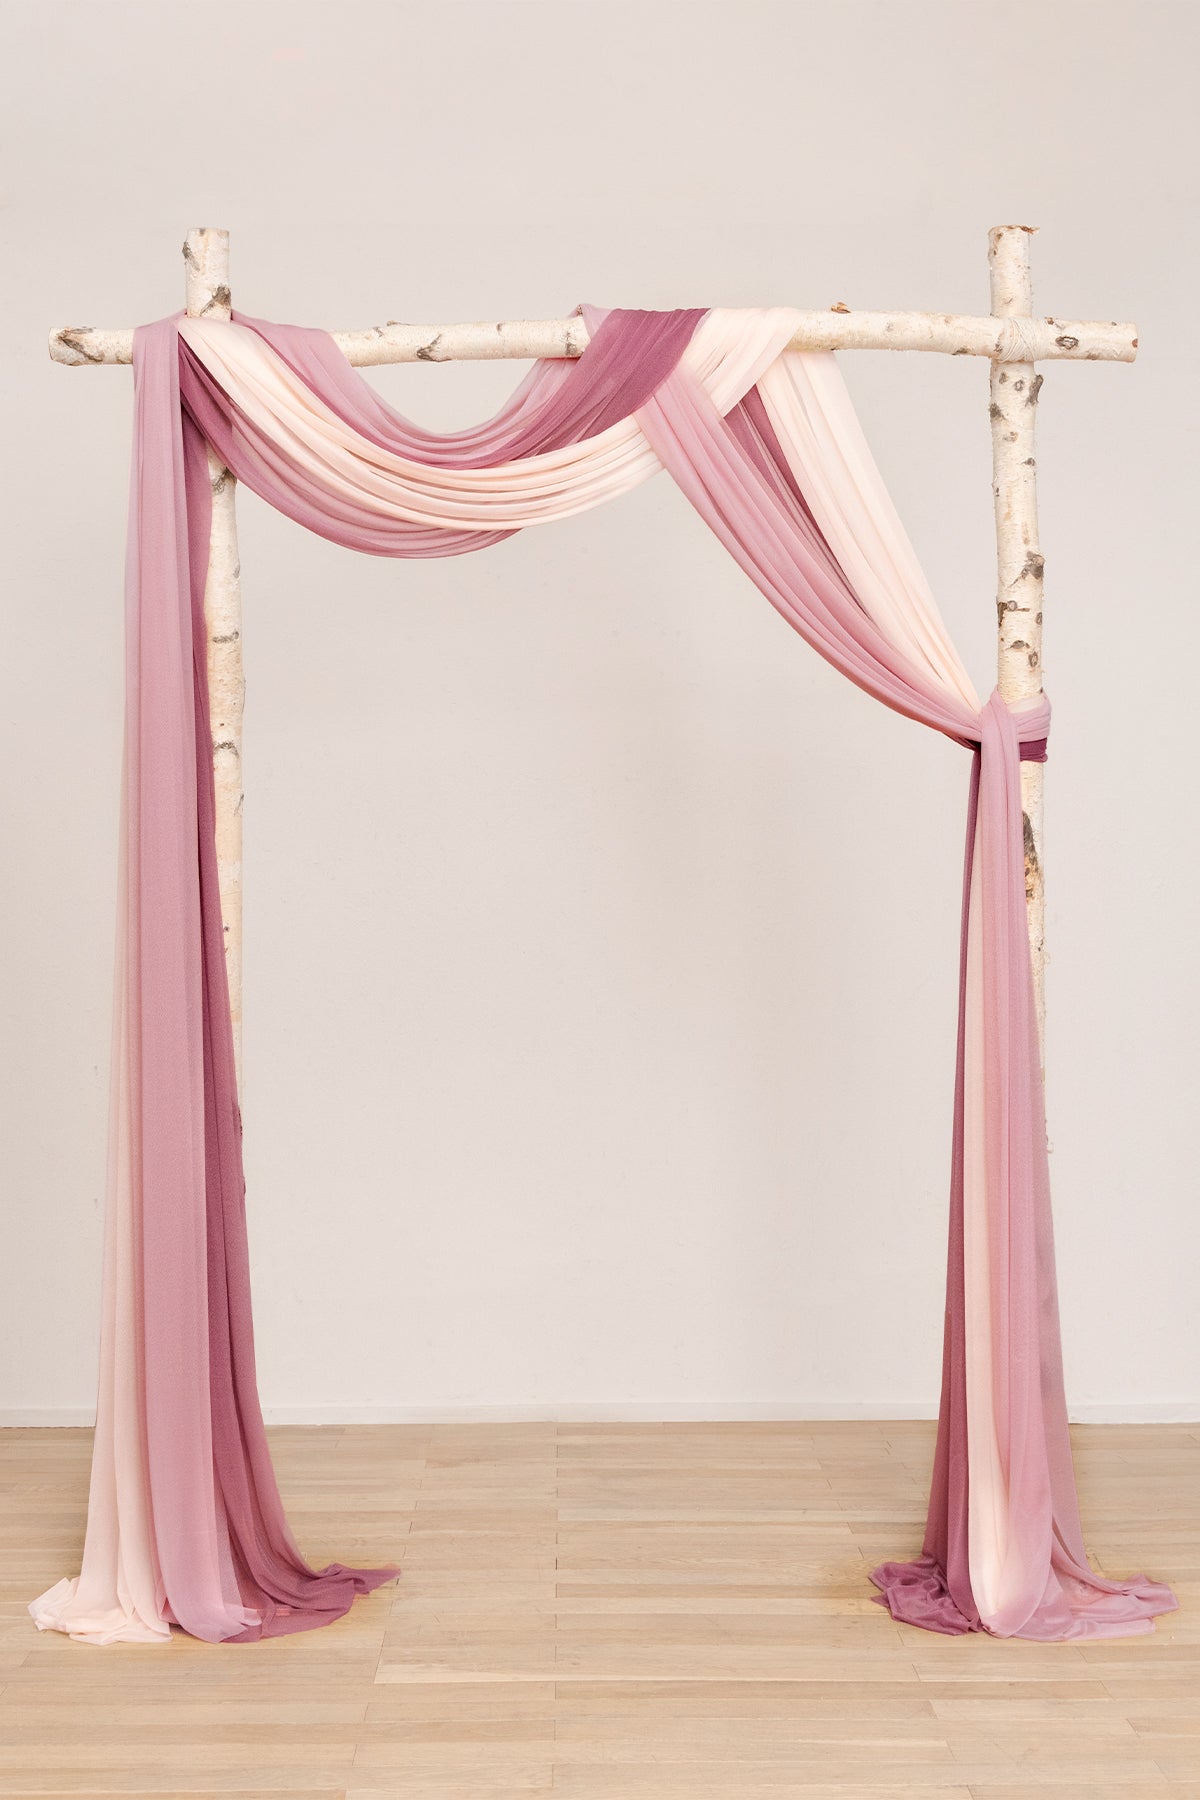 2 Panels 20ft Wedding Arch Draping Fabric Light Pink Chiffon